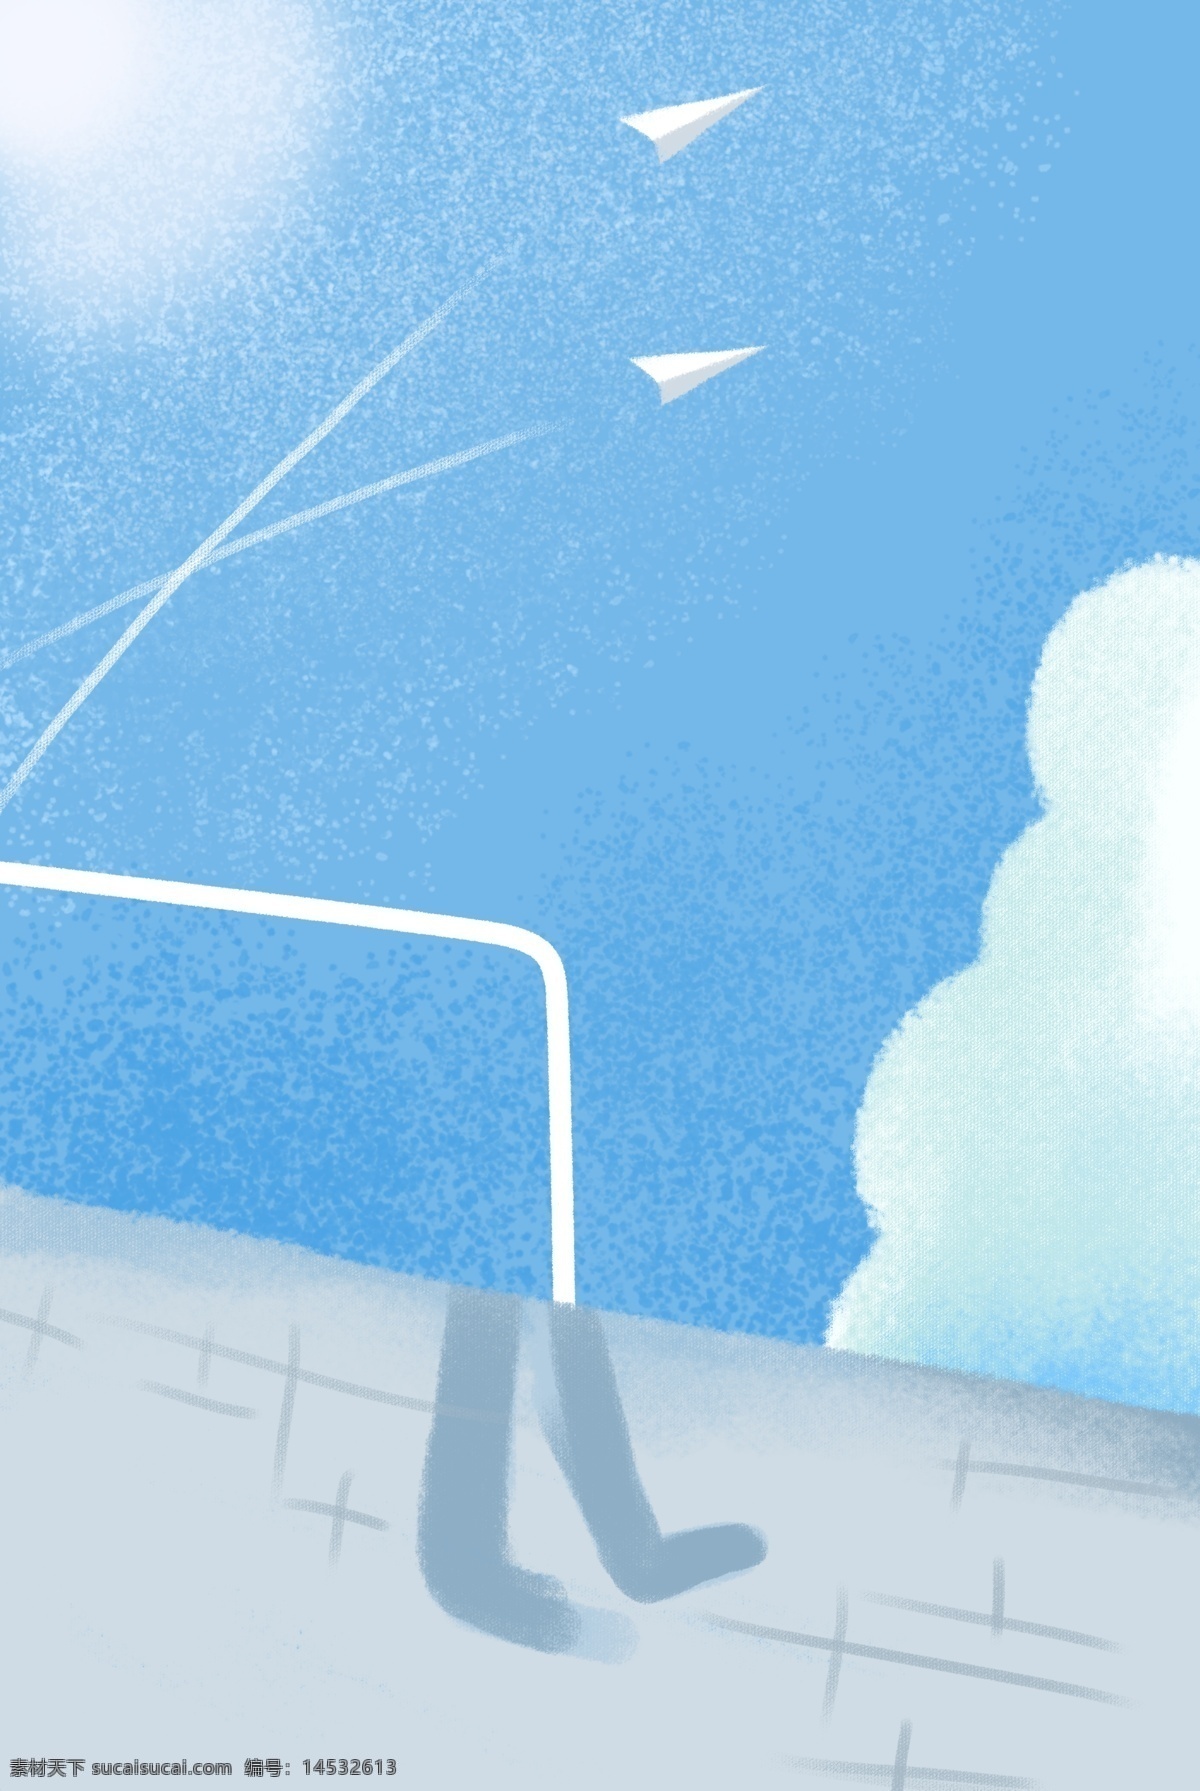 蓝色 天空 台面 免 抠 图 白色的飞机 卡通图案 卡通插画 蓝天白云 时尚云彩 蓝色天空 免抠图